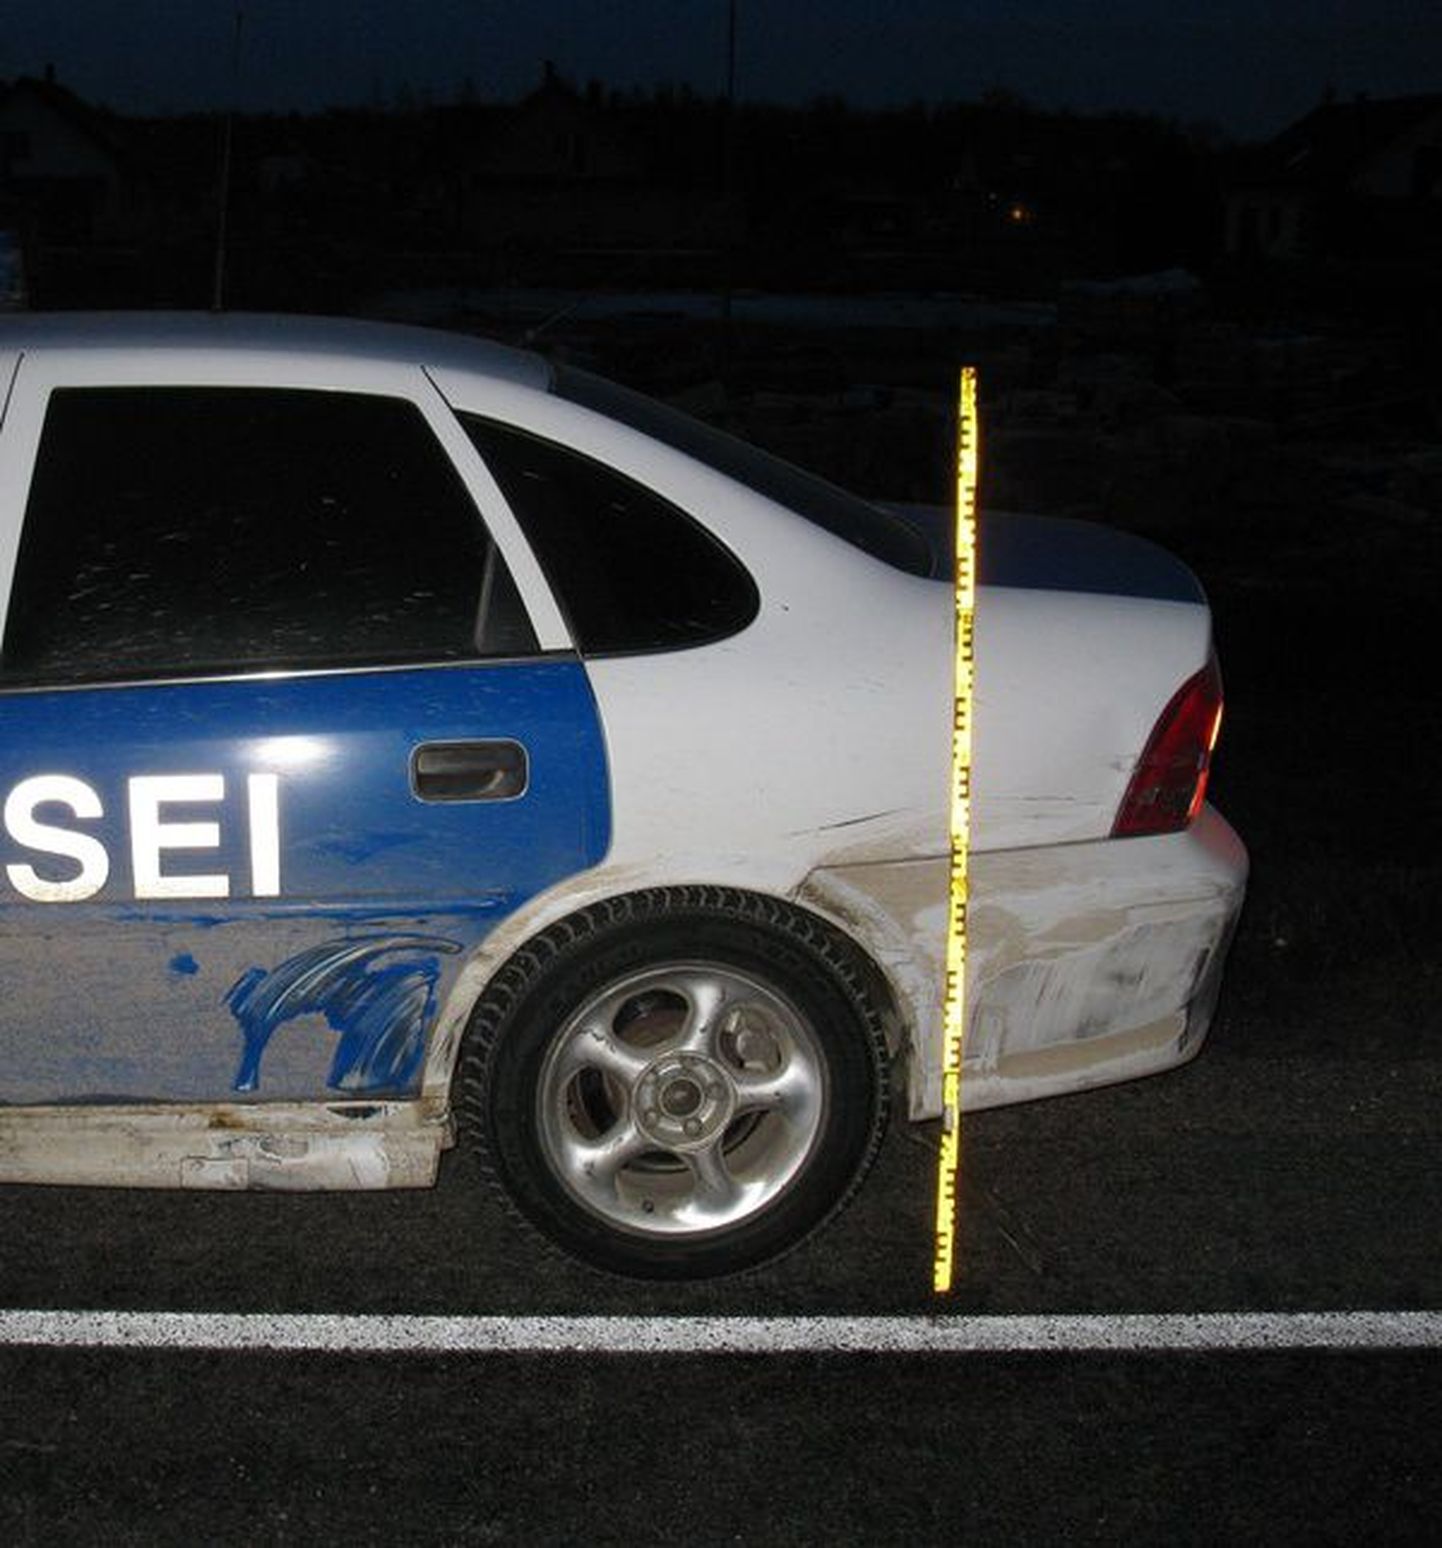 Roolijoodiku põhjustatud avariis sai viga ka politsei Opel Vectra.